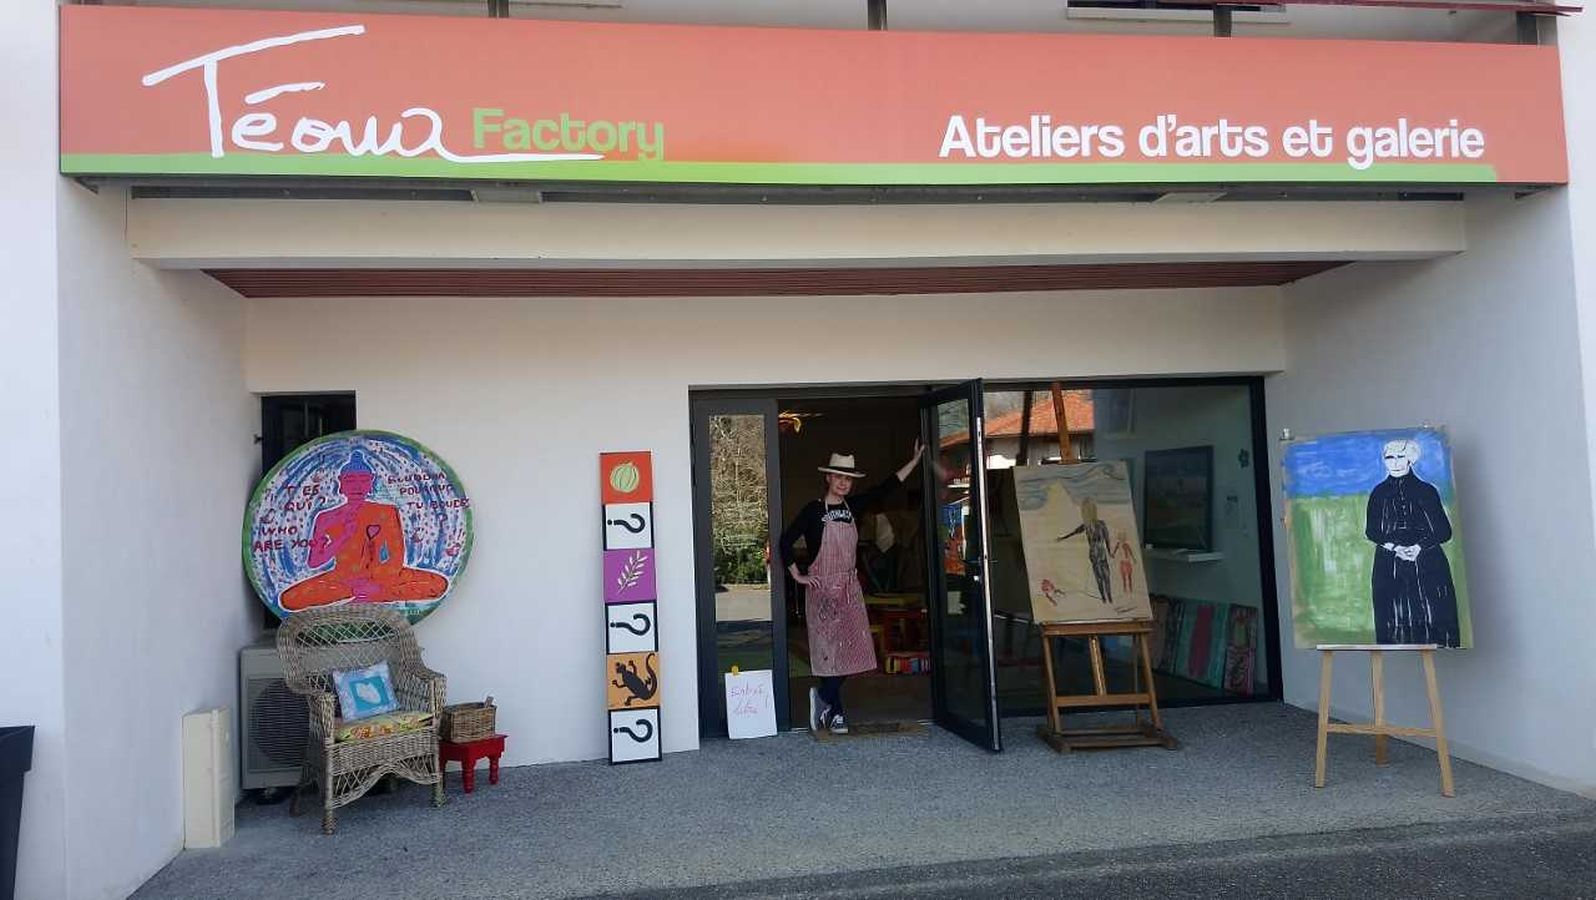 Téoua Factory - Atelier d'artiste/galerie  France Nouvelle-Aquitaine Pyrénées-Atlantiques Sare 64310